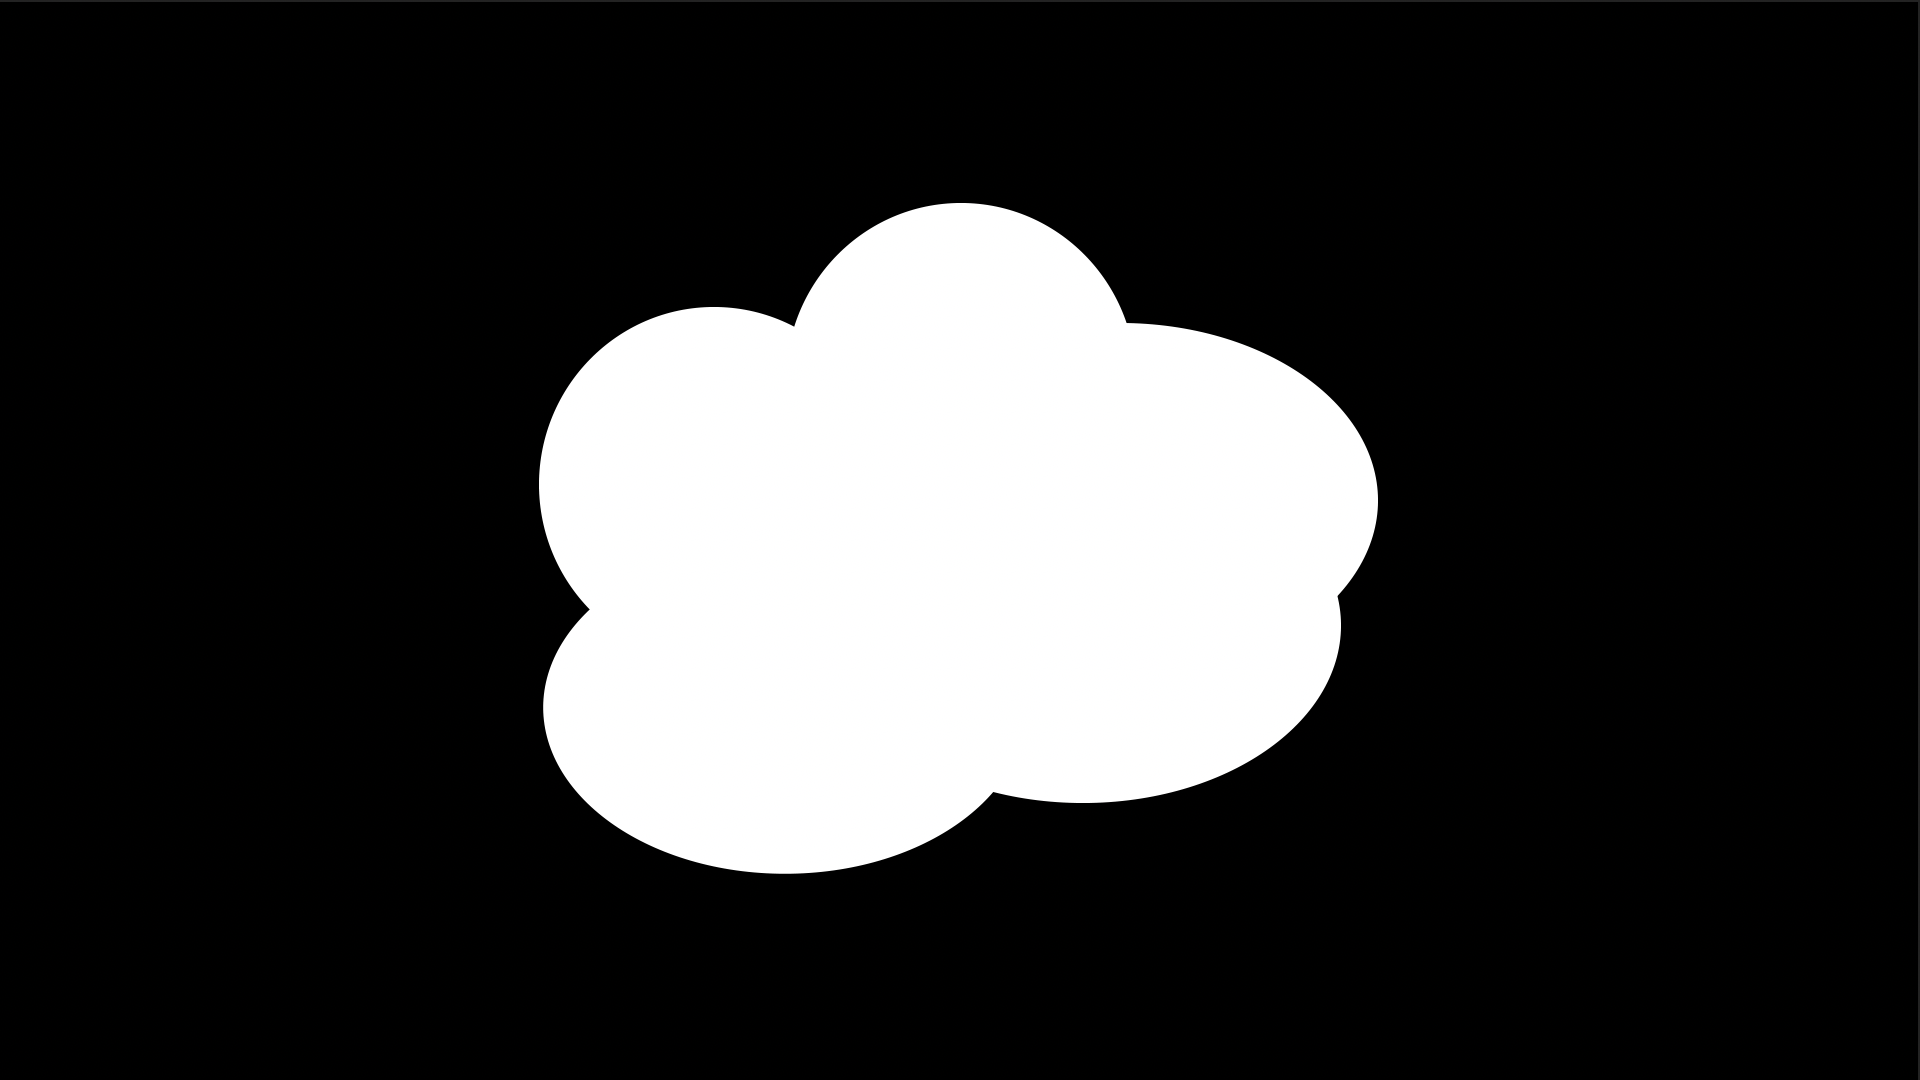 アニメ風の煙エフェクト フリー素材配布 Ae初心者チュートリアル ゴルデザブログ 映像制作とライフスタイル